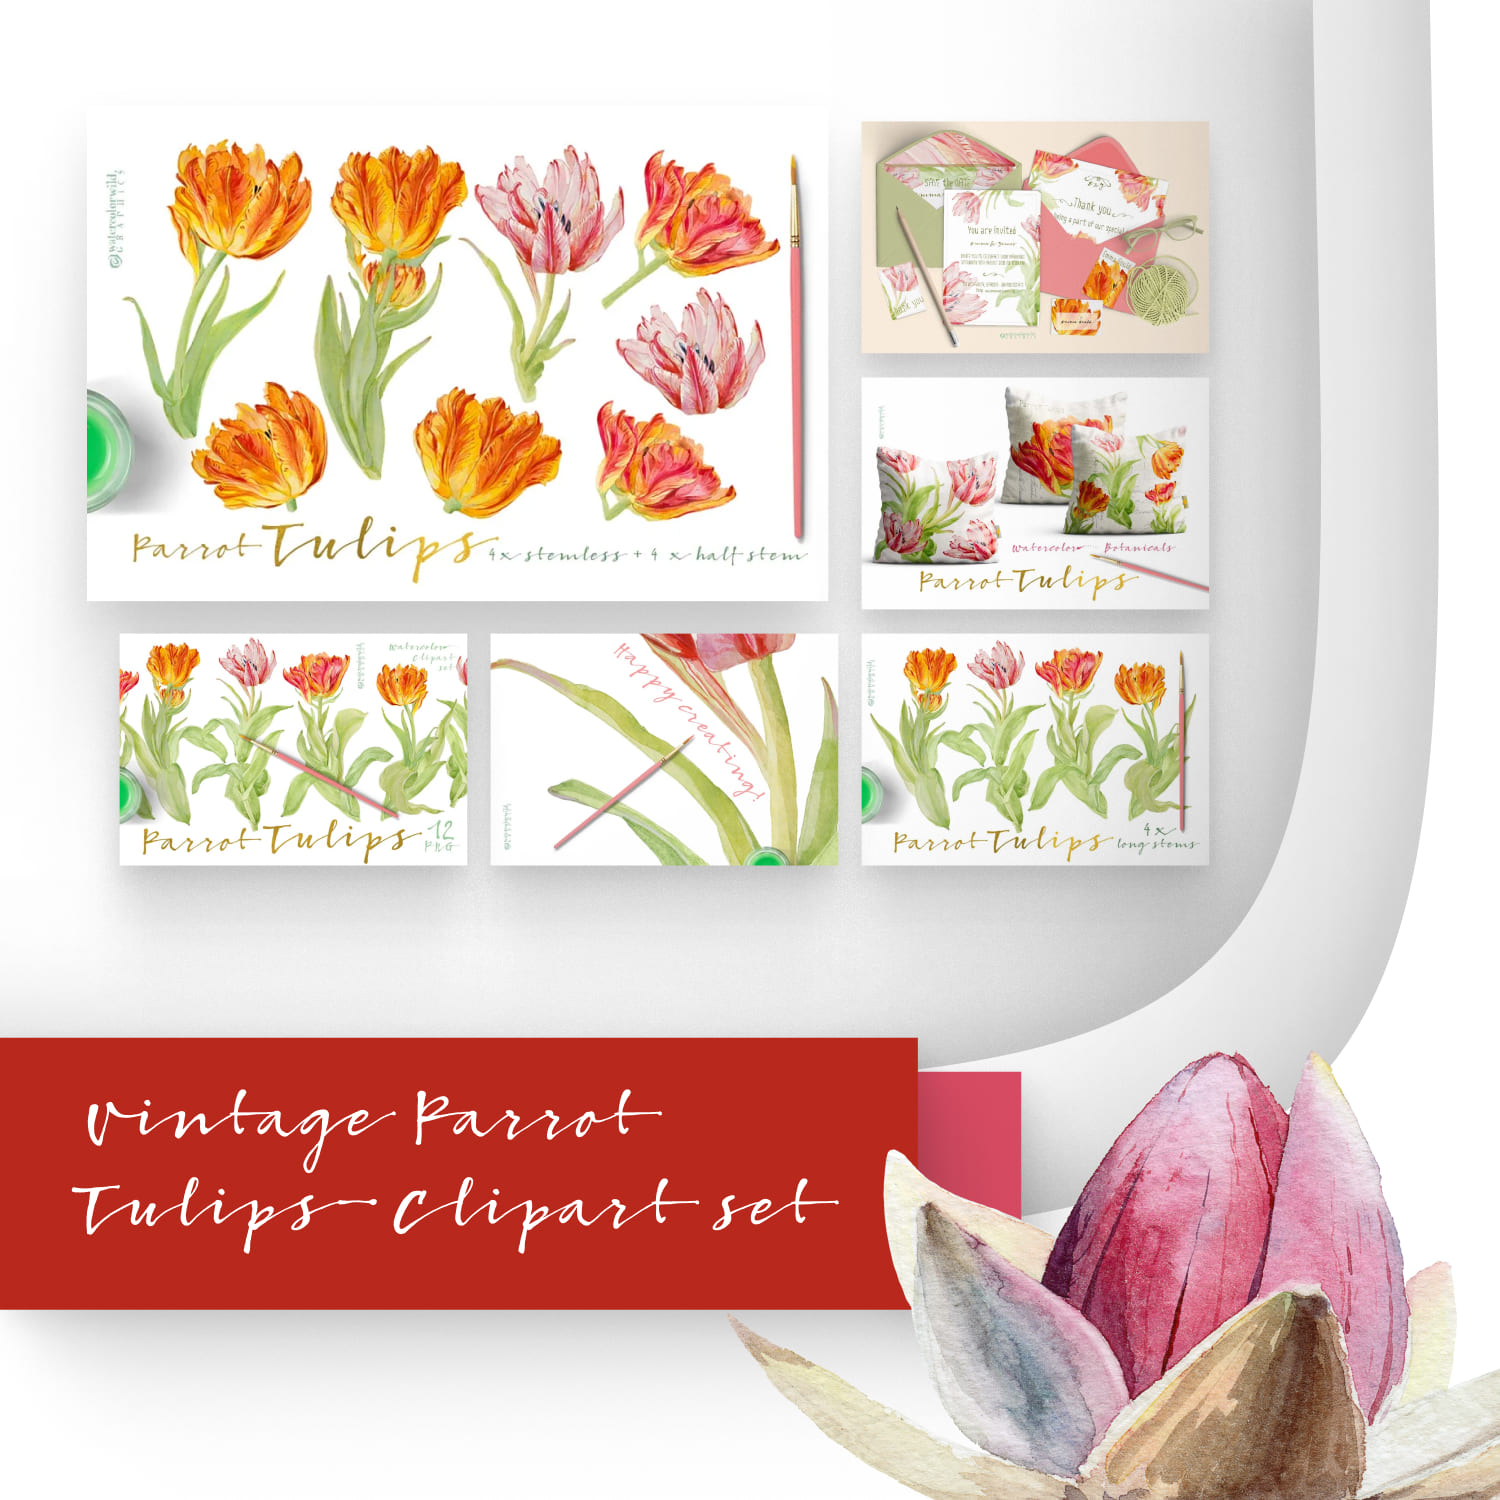 Vintage Parrot Tulips-Clipart set.